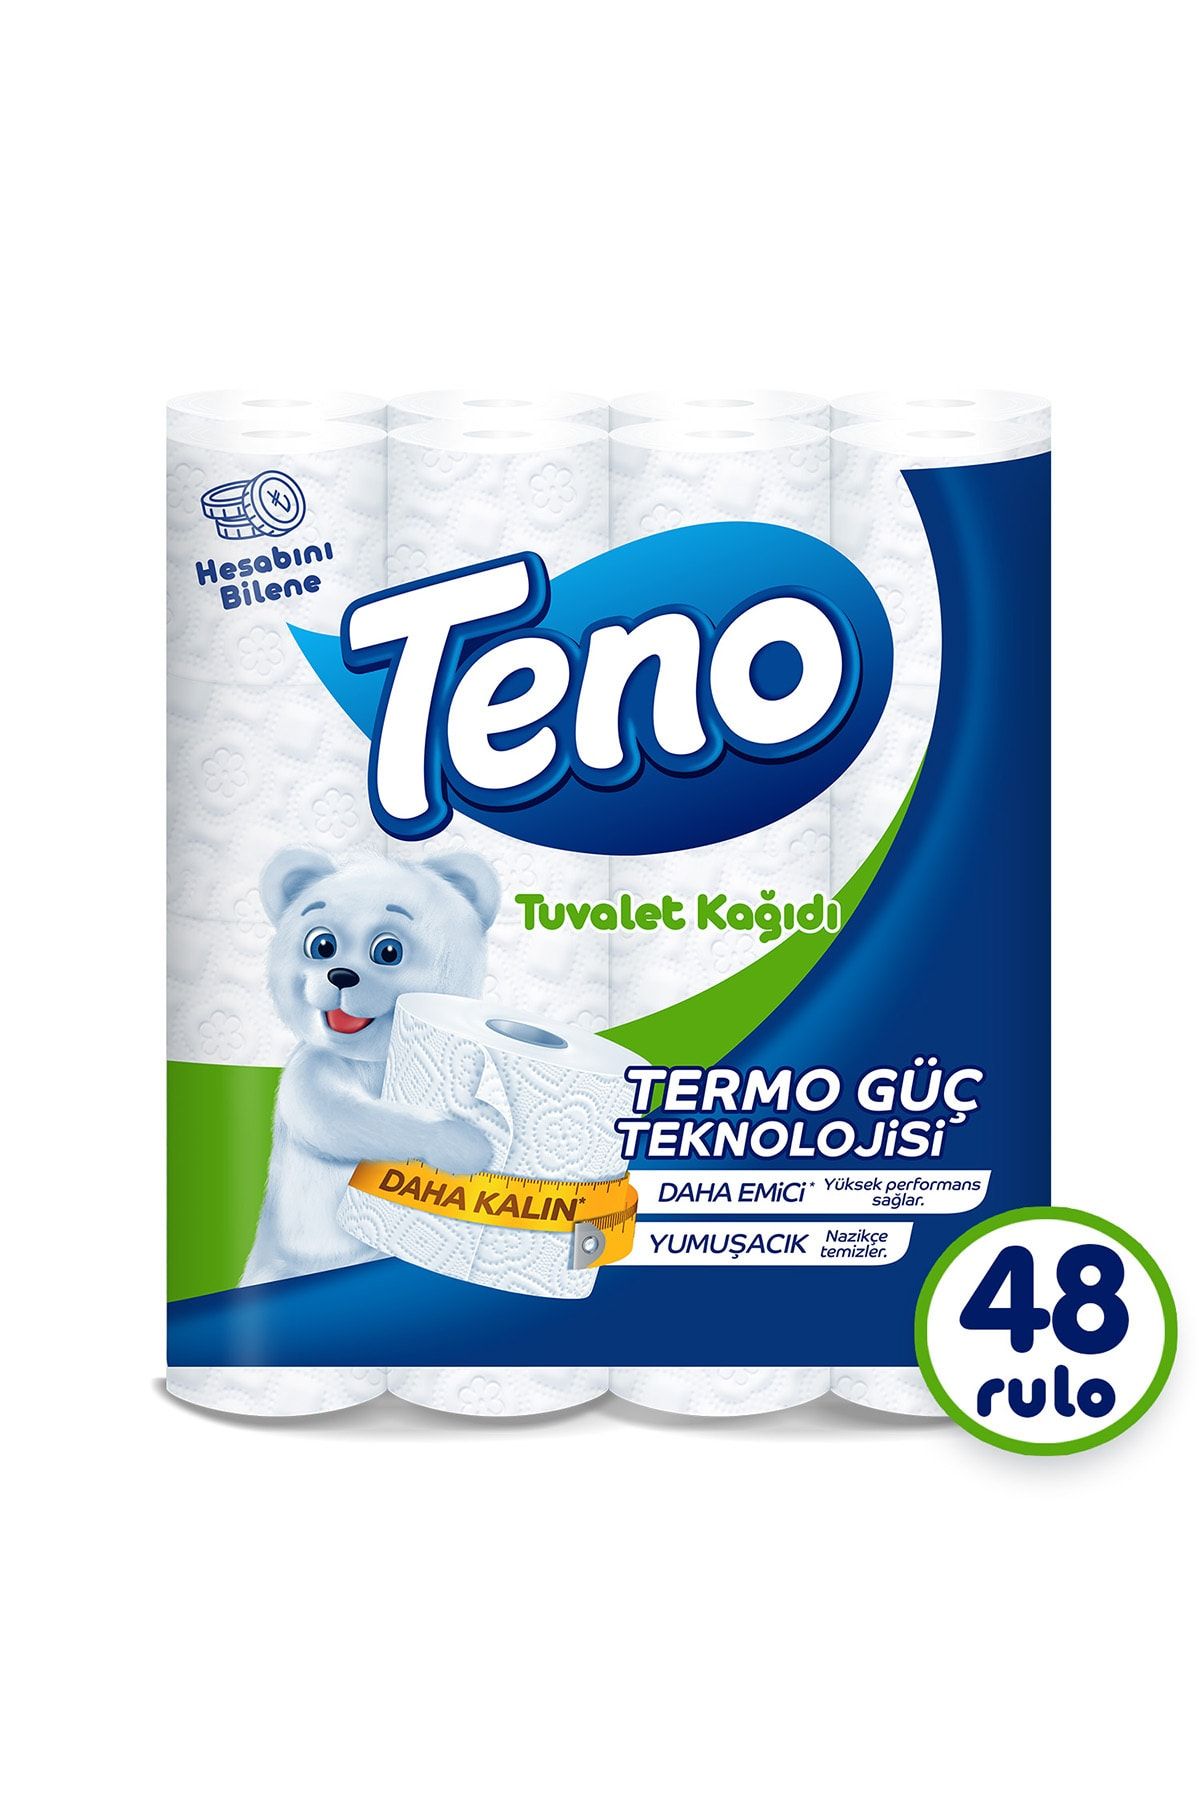 Teno Avantaj Paket Tuvalet Kağıdı 48 Rulo (16 RULO X 3 PAKET)